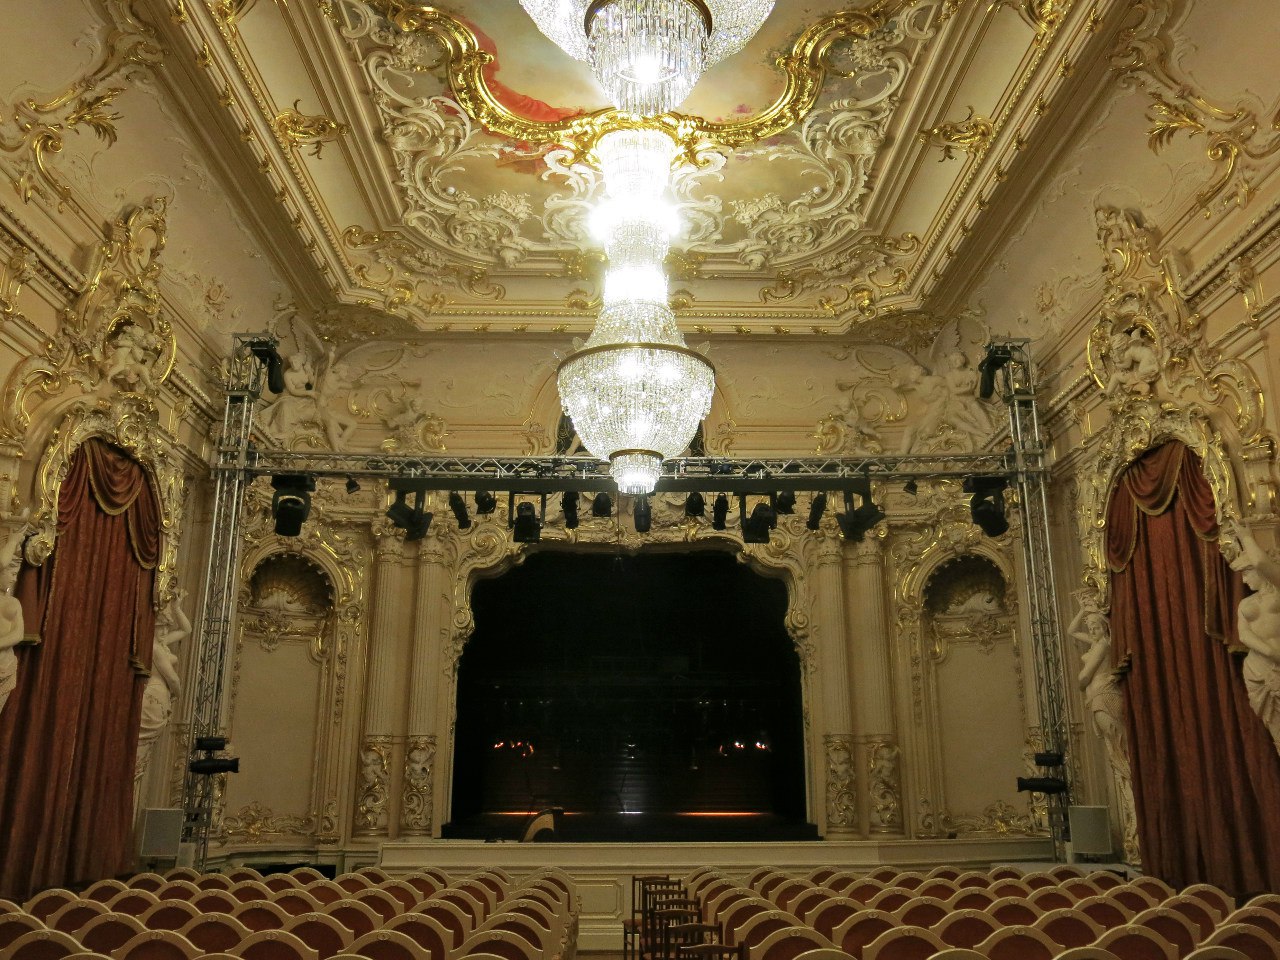 театр музыкальной комедии санкт петербург большой зал